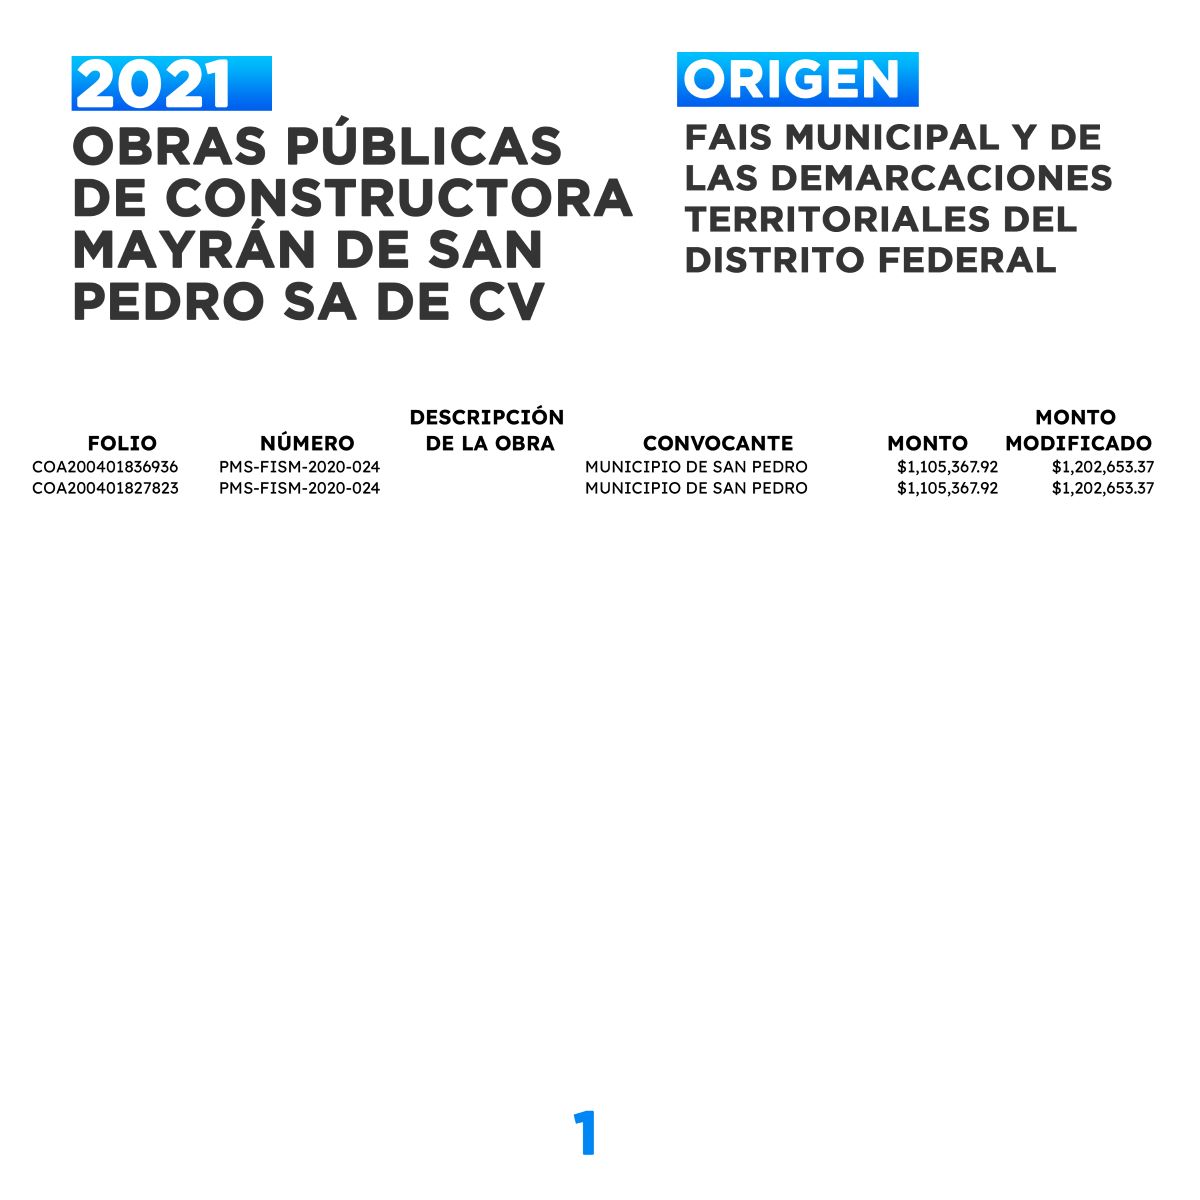 Contratos de Constructora Mayrán de San Pedro provenientes del Fondo de Aportaciones para la Infraestructura Social 2021. FUENTE: Secretaría de Finanzas de Coahuila.